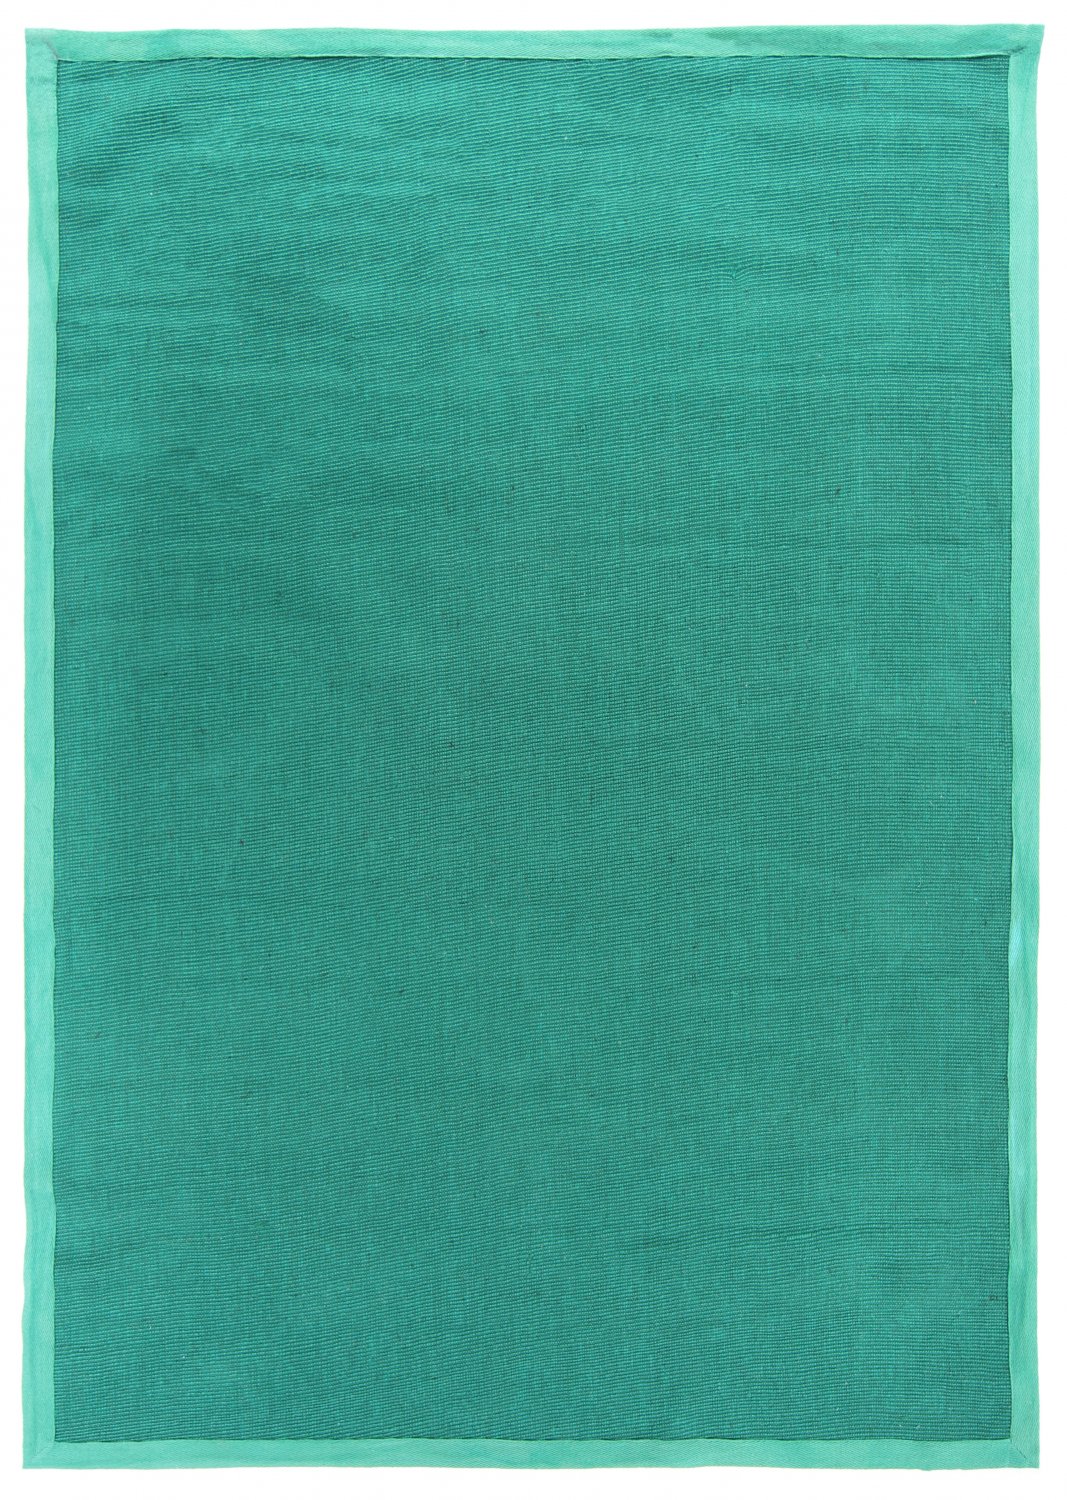 Sisalmatta - Agave (smaragdgrön)